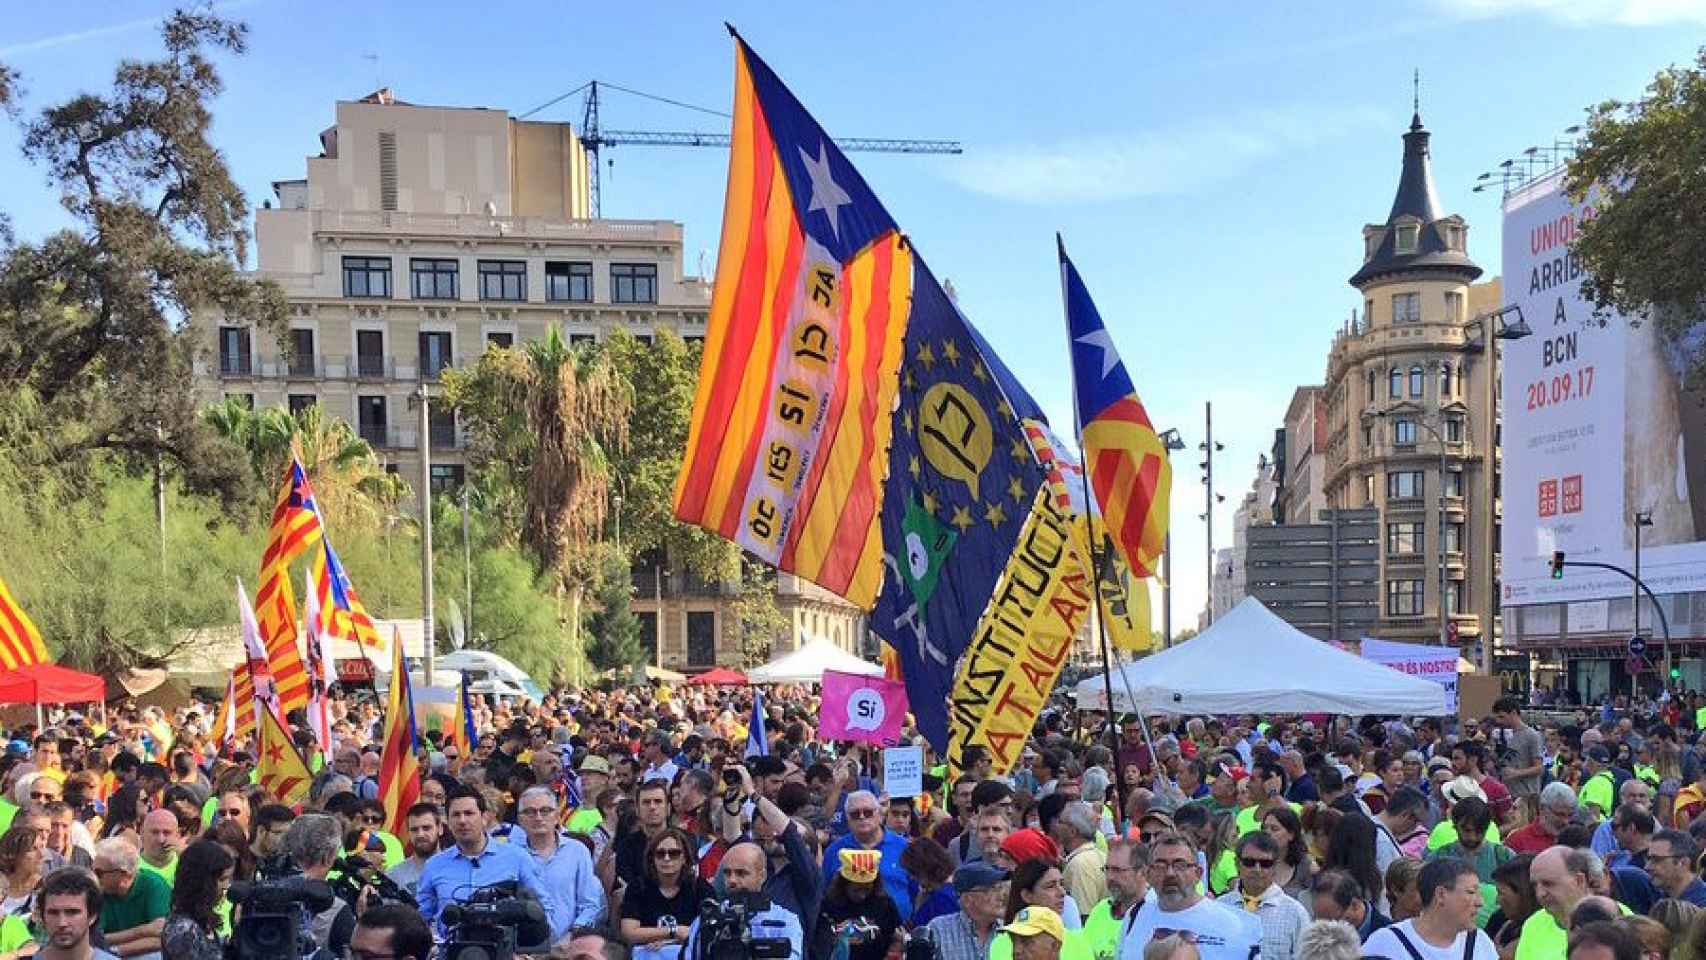 Imagen de la movilización independentista en la plaza Universitat de Barcelona la semana pasada, momento en el que se empezó a trabajar para convocar la huelga general en Cataluña / CG